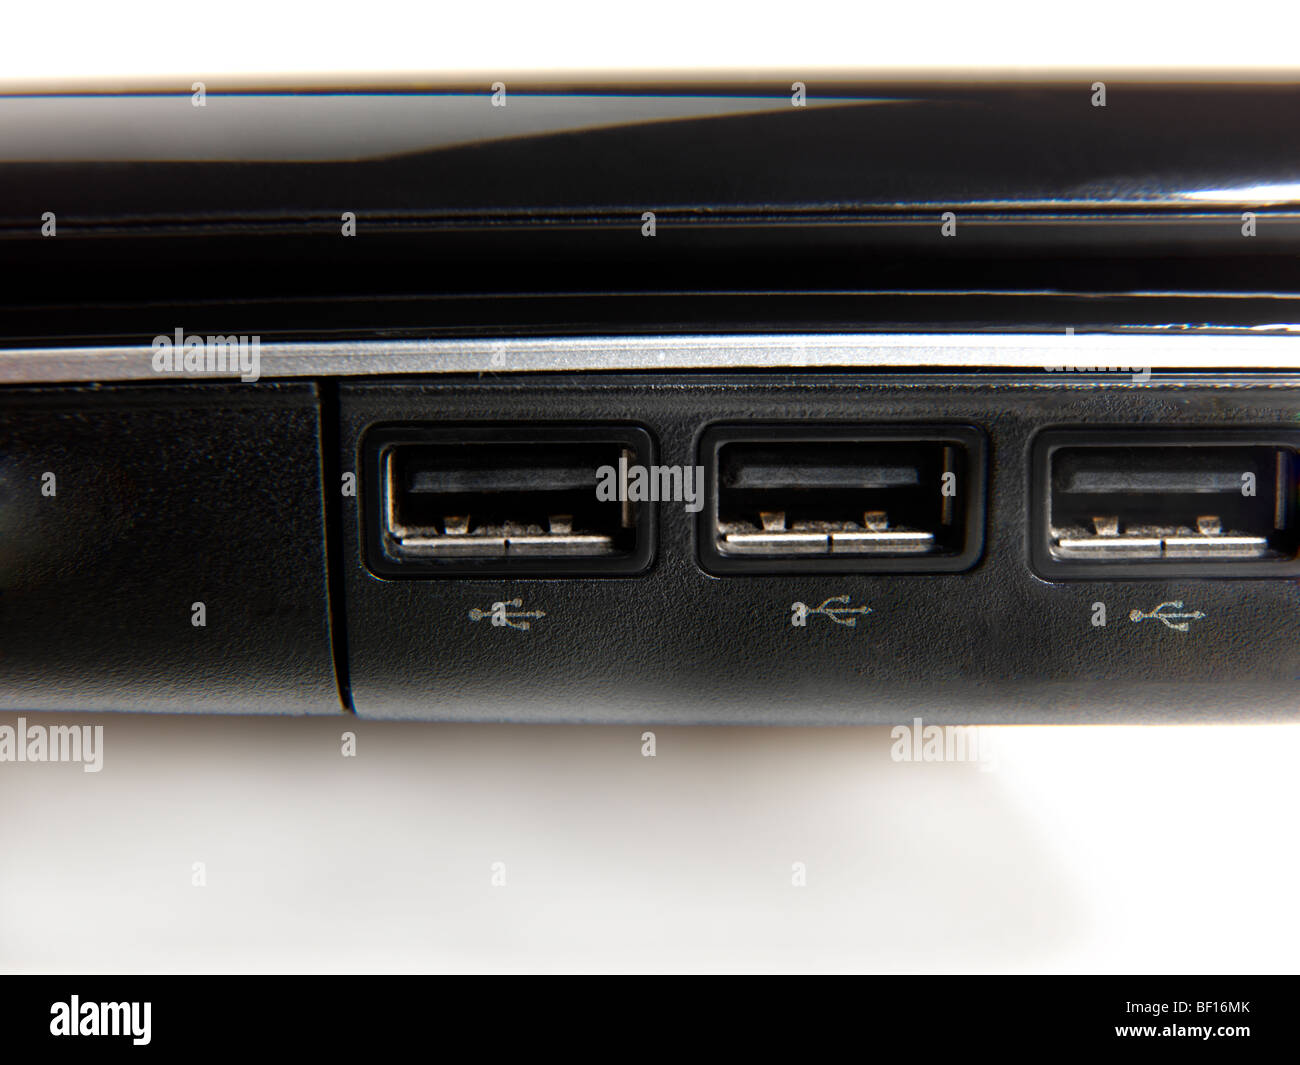 Montrant les ports USB (Universal Serial Bus) Symbole Trident pour connecter les périphériques informatiques Banque D'Images